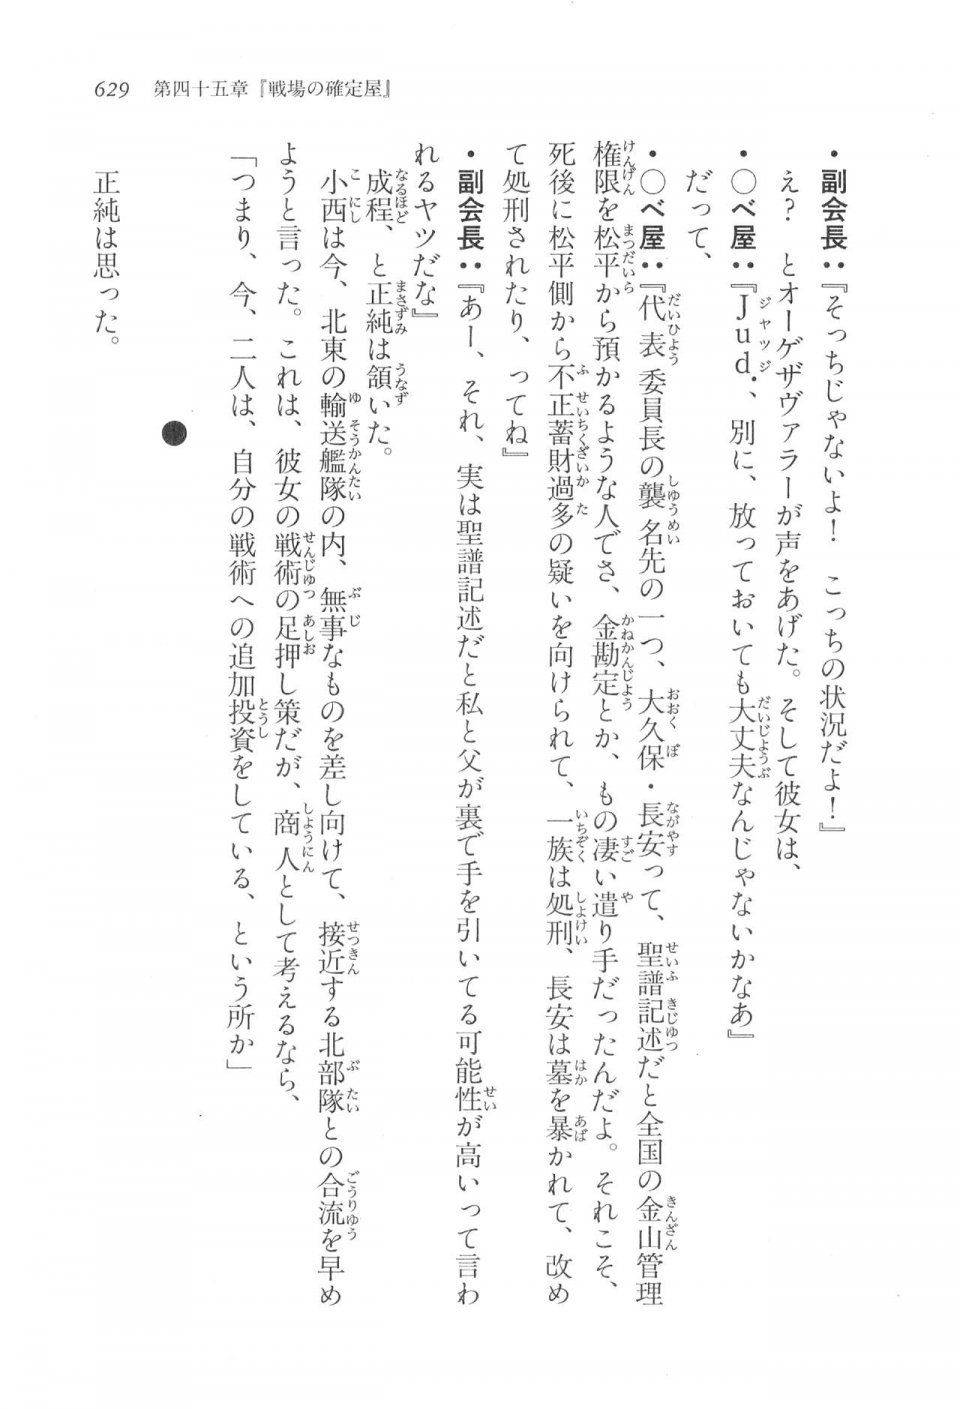 Kyoukai Senjou no Horizon LN Vol 17(7B) - Photo #631